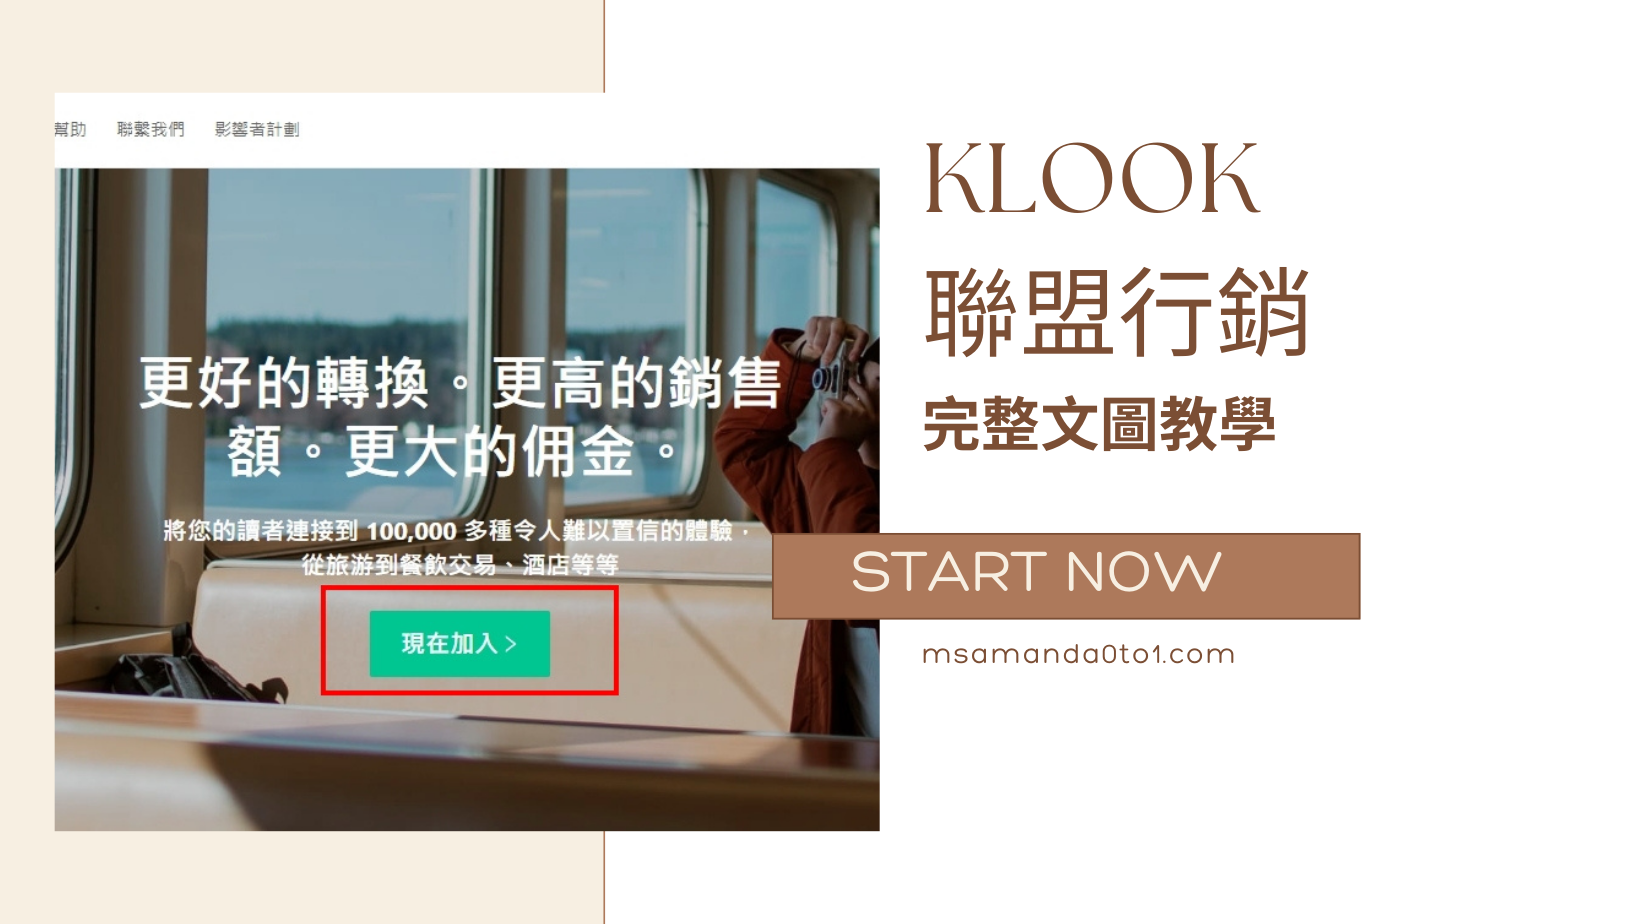 KLOOK客路聯盟行銷完整文圖教學，最高5%從網路流量賺佣金！